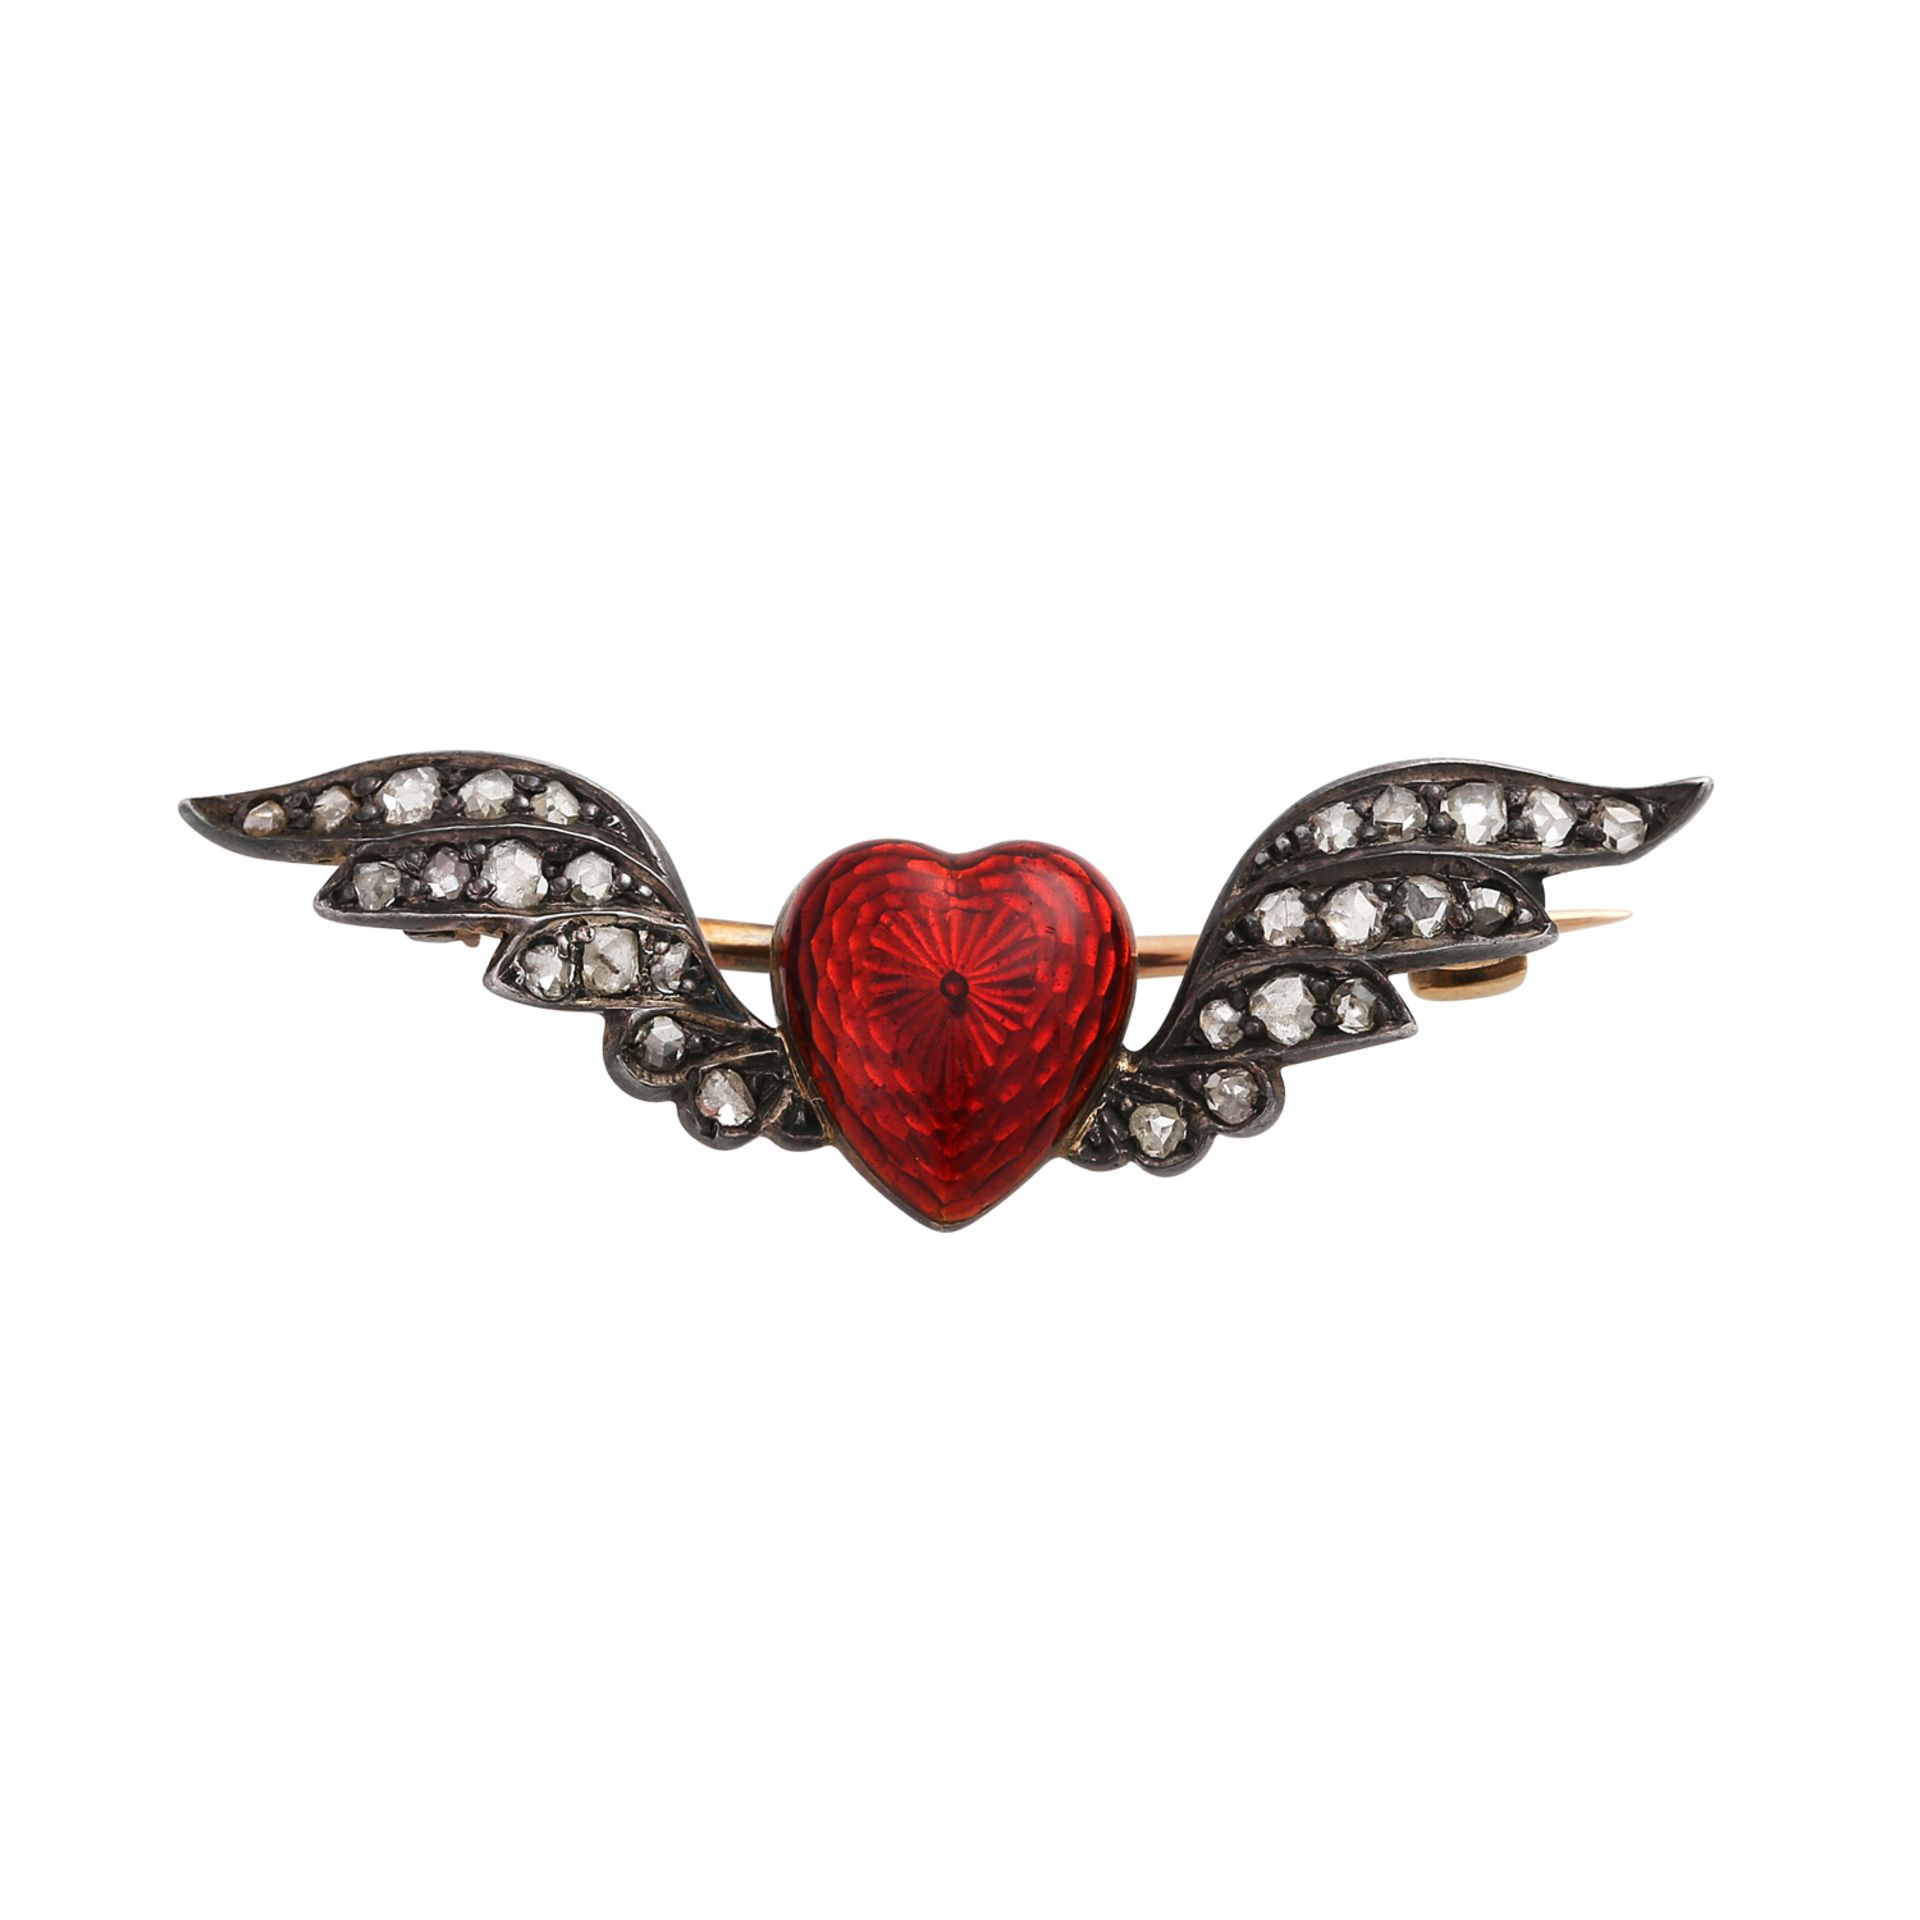 Brosche "geflügeltes Herz" bes. mit 28 Diamantrosen,zus. ca. 0,3 ct in den Flügeln, Herz plastisch